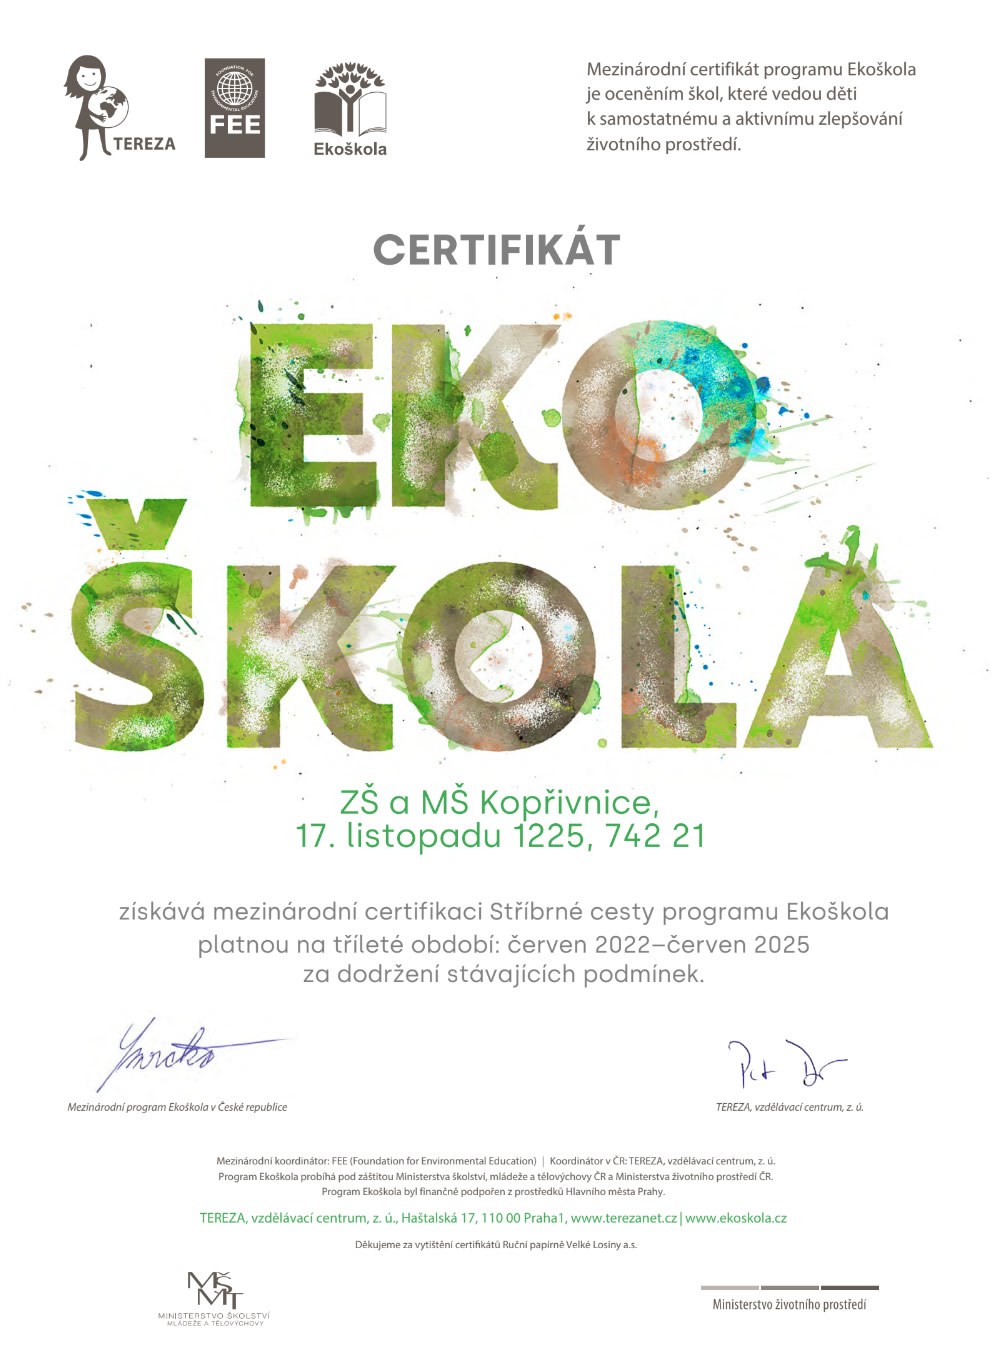 Mezinárodní certifikace Stříbrné cesty programu Ekoškola 2022 - 2025